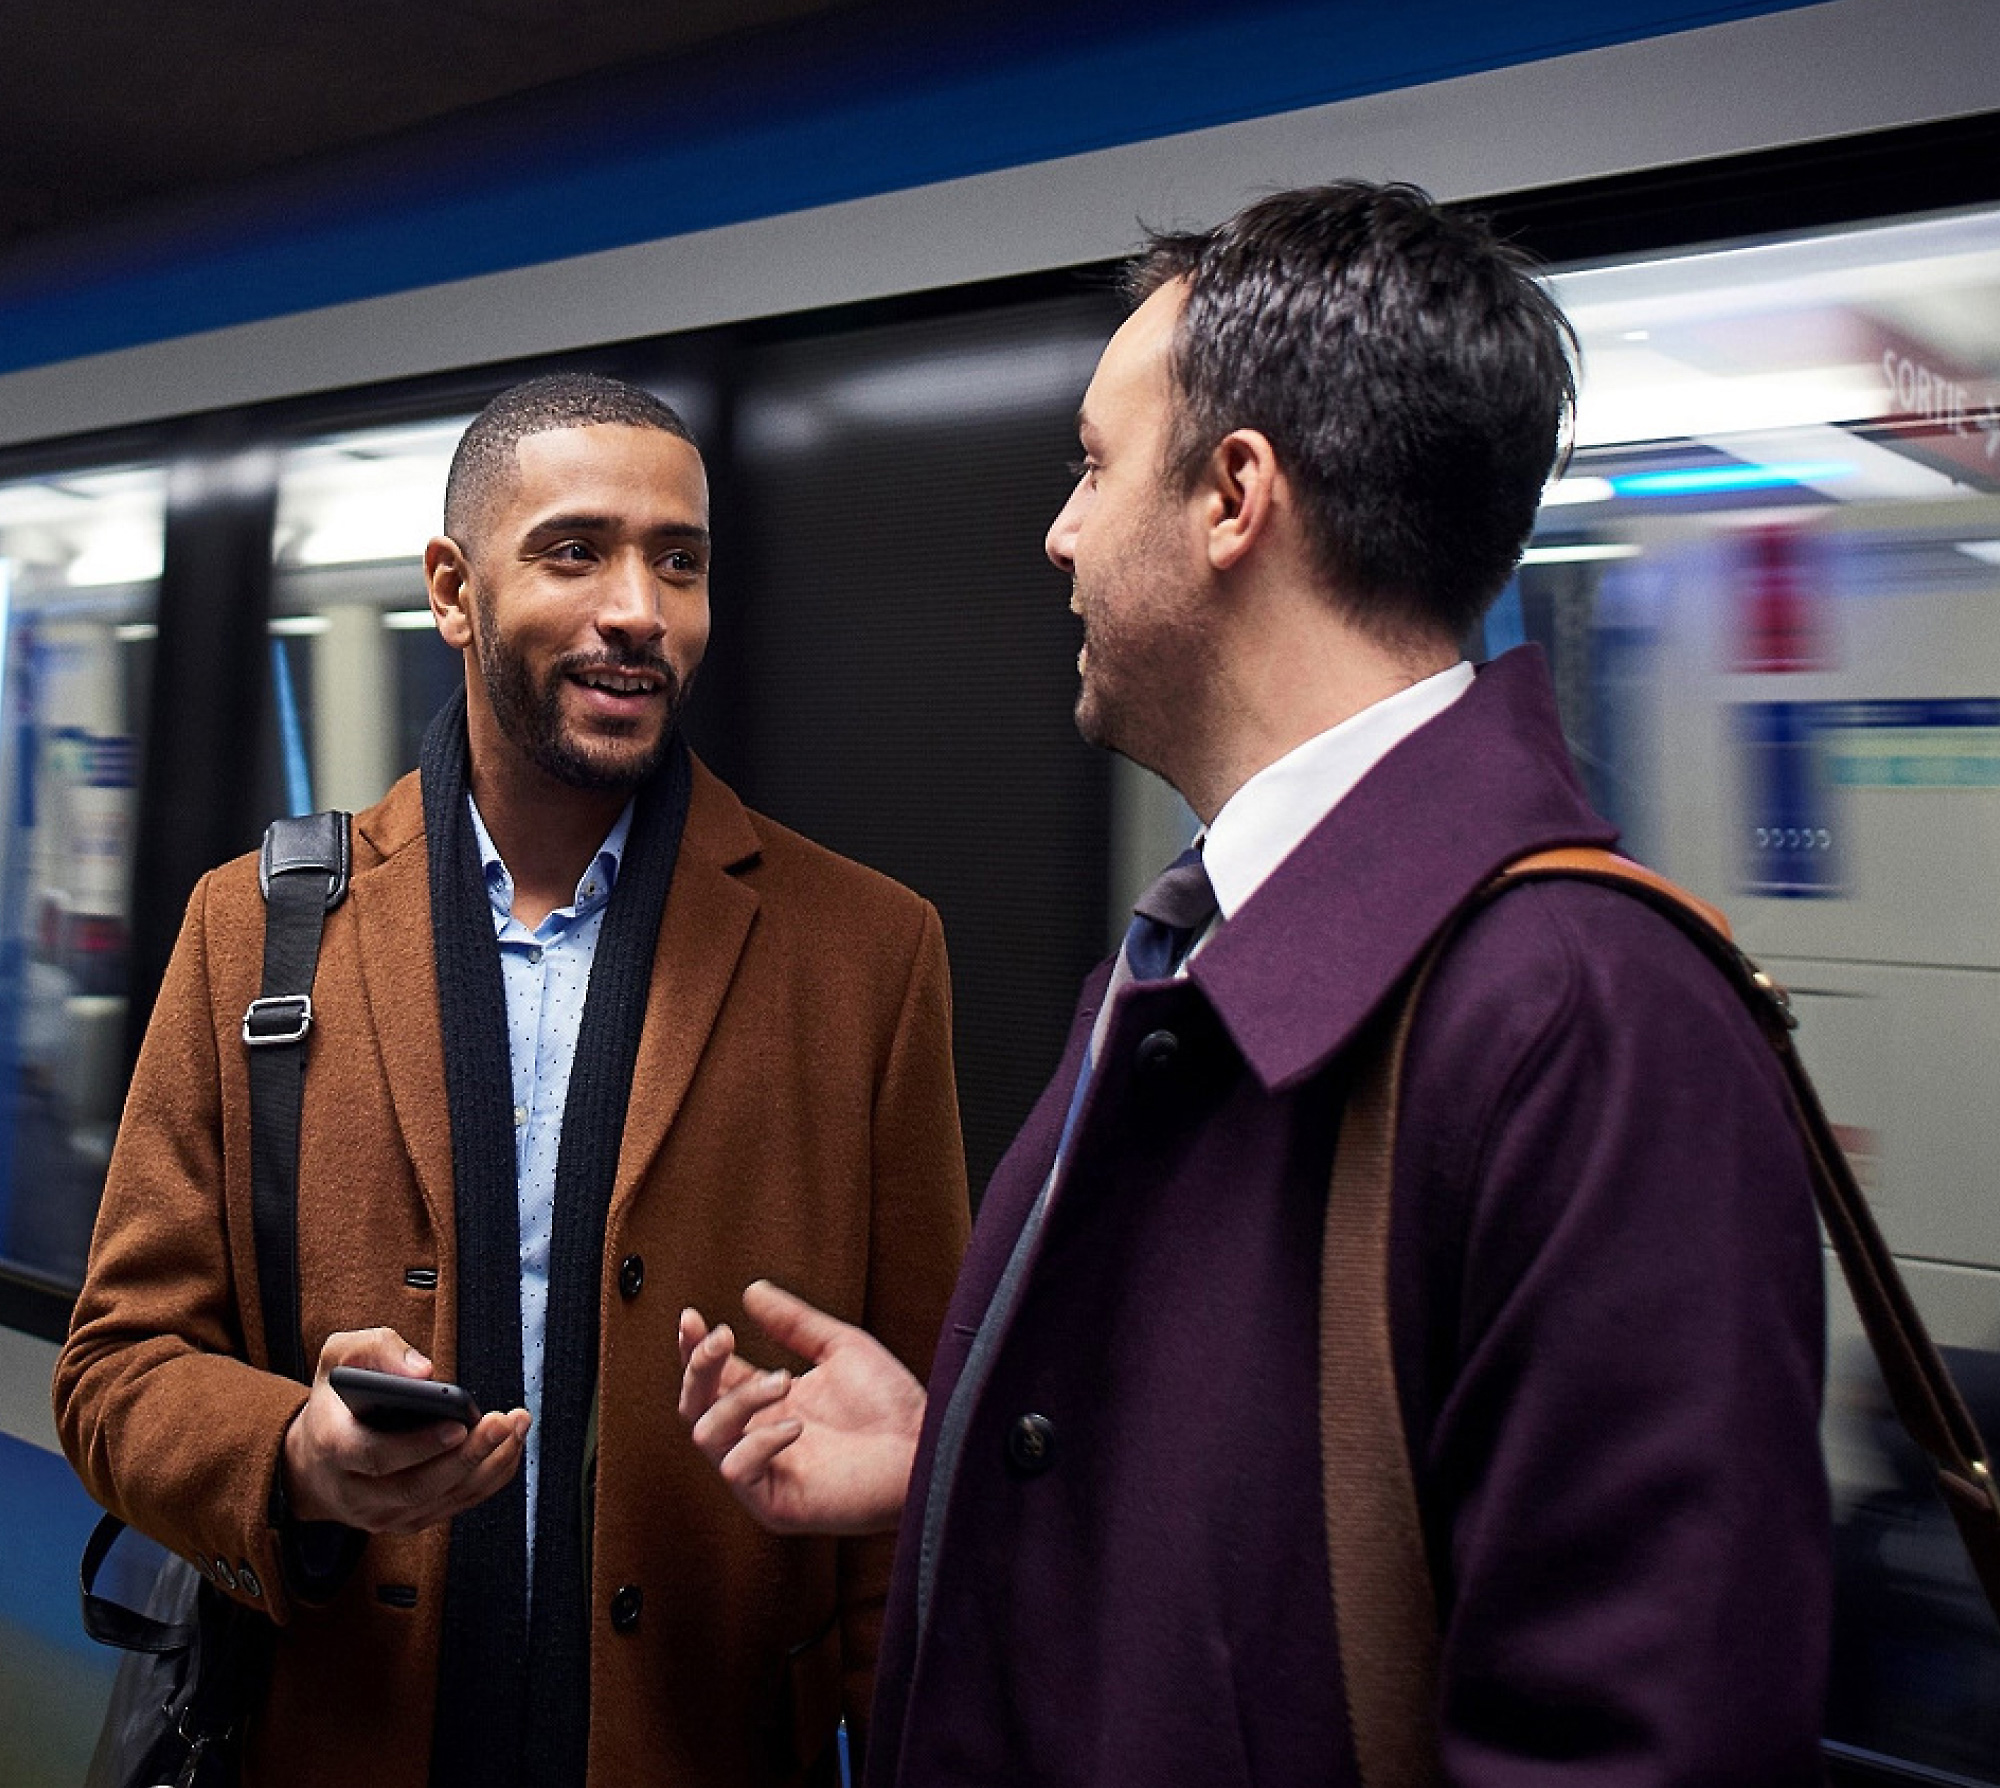 Двое мужчин разговаривают на платформе метро, один из них держит в руках смартфон, а позади них виден движущийся поезд.